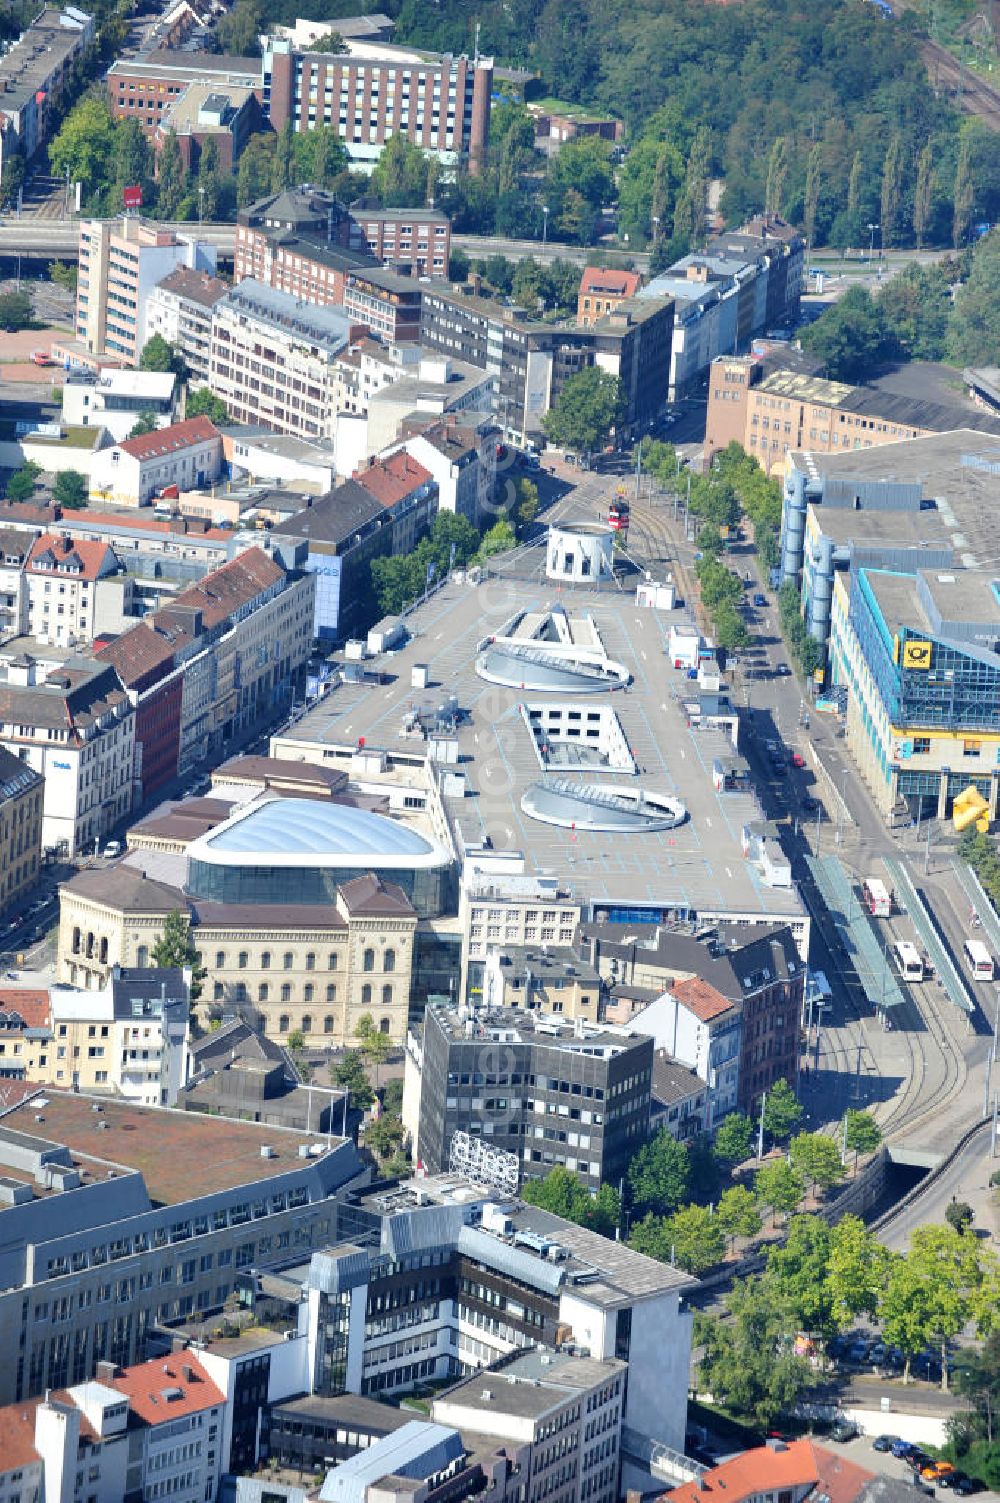 Aerial image Saarbrücken - Blick auf das Einkaufszentrum Europa-Galerie Saarbrücken am Hauptbahnhof. Betrieben wird es von der ECE Projektmanagement G.m.b.H. & Co.KG. The Shopping Centre Europe Gallery Saarbrücken.